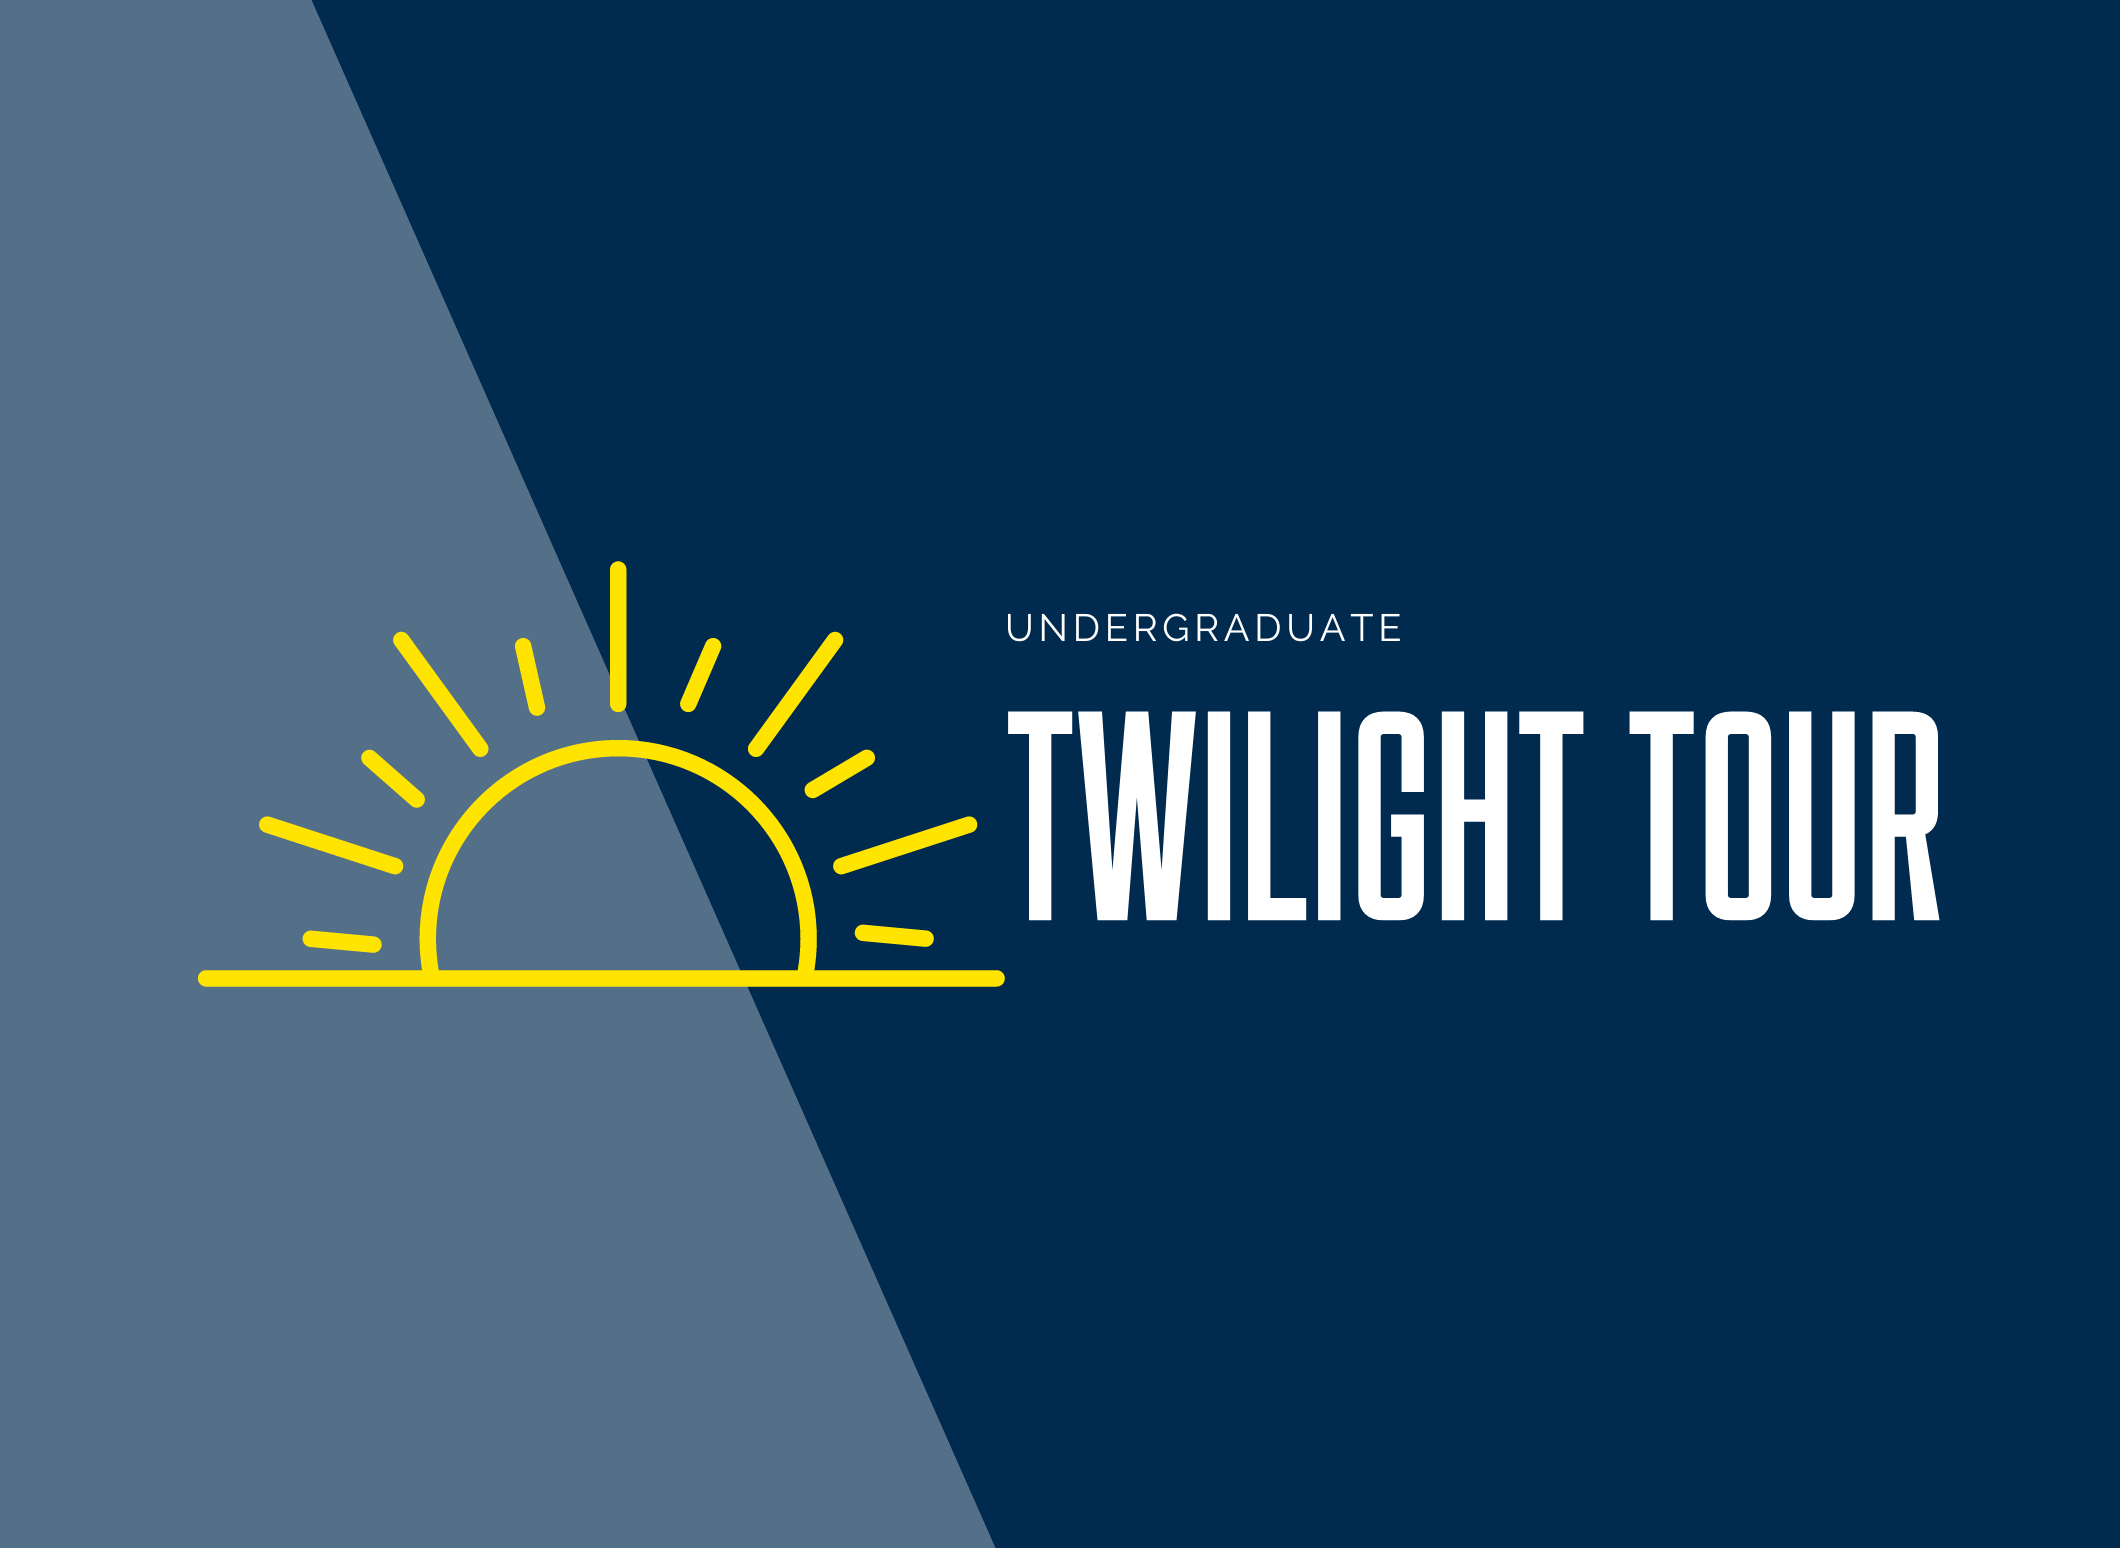 LVC Undergraduate Twilight Tour visit event graphic